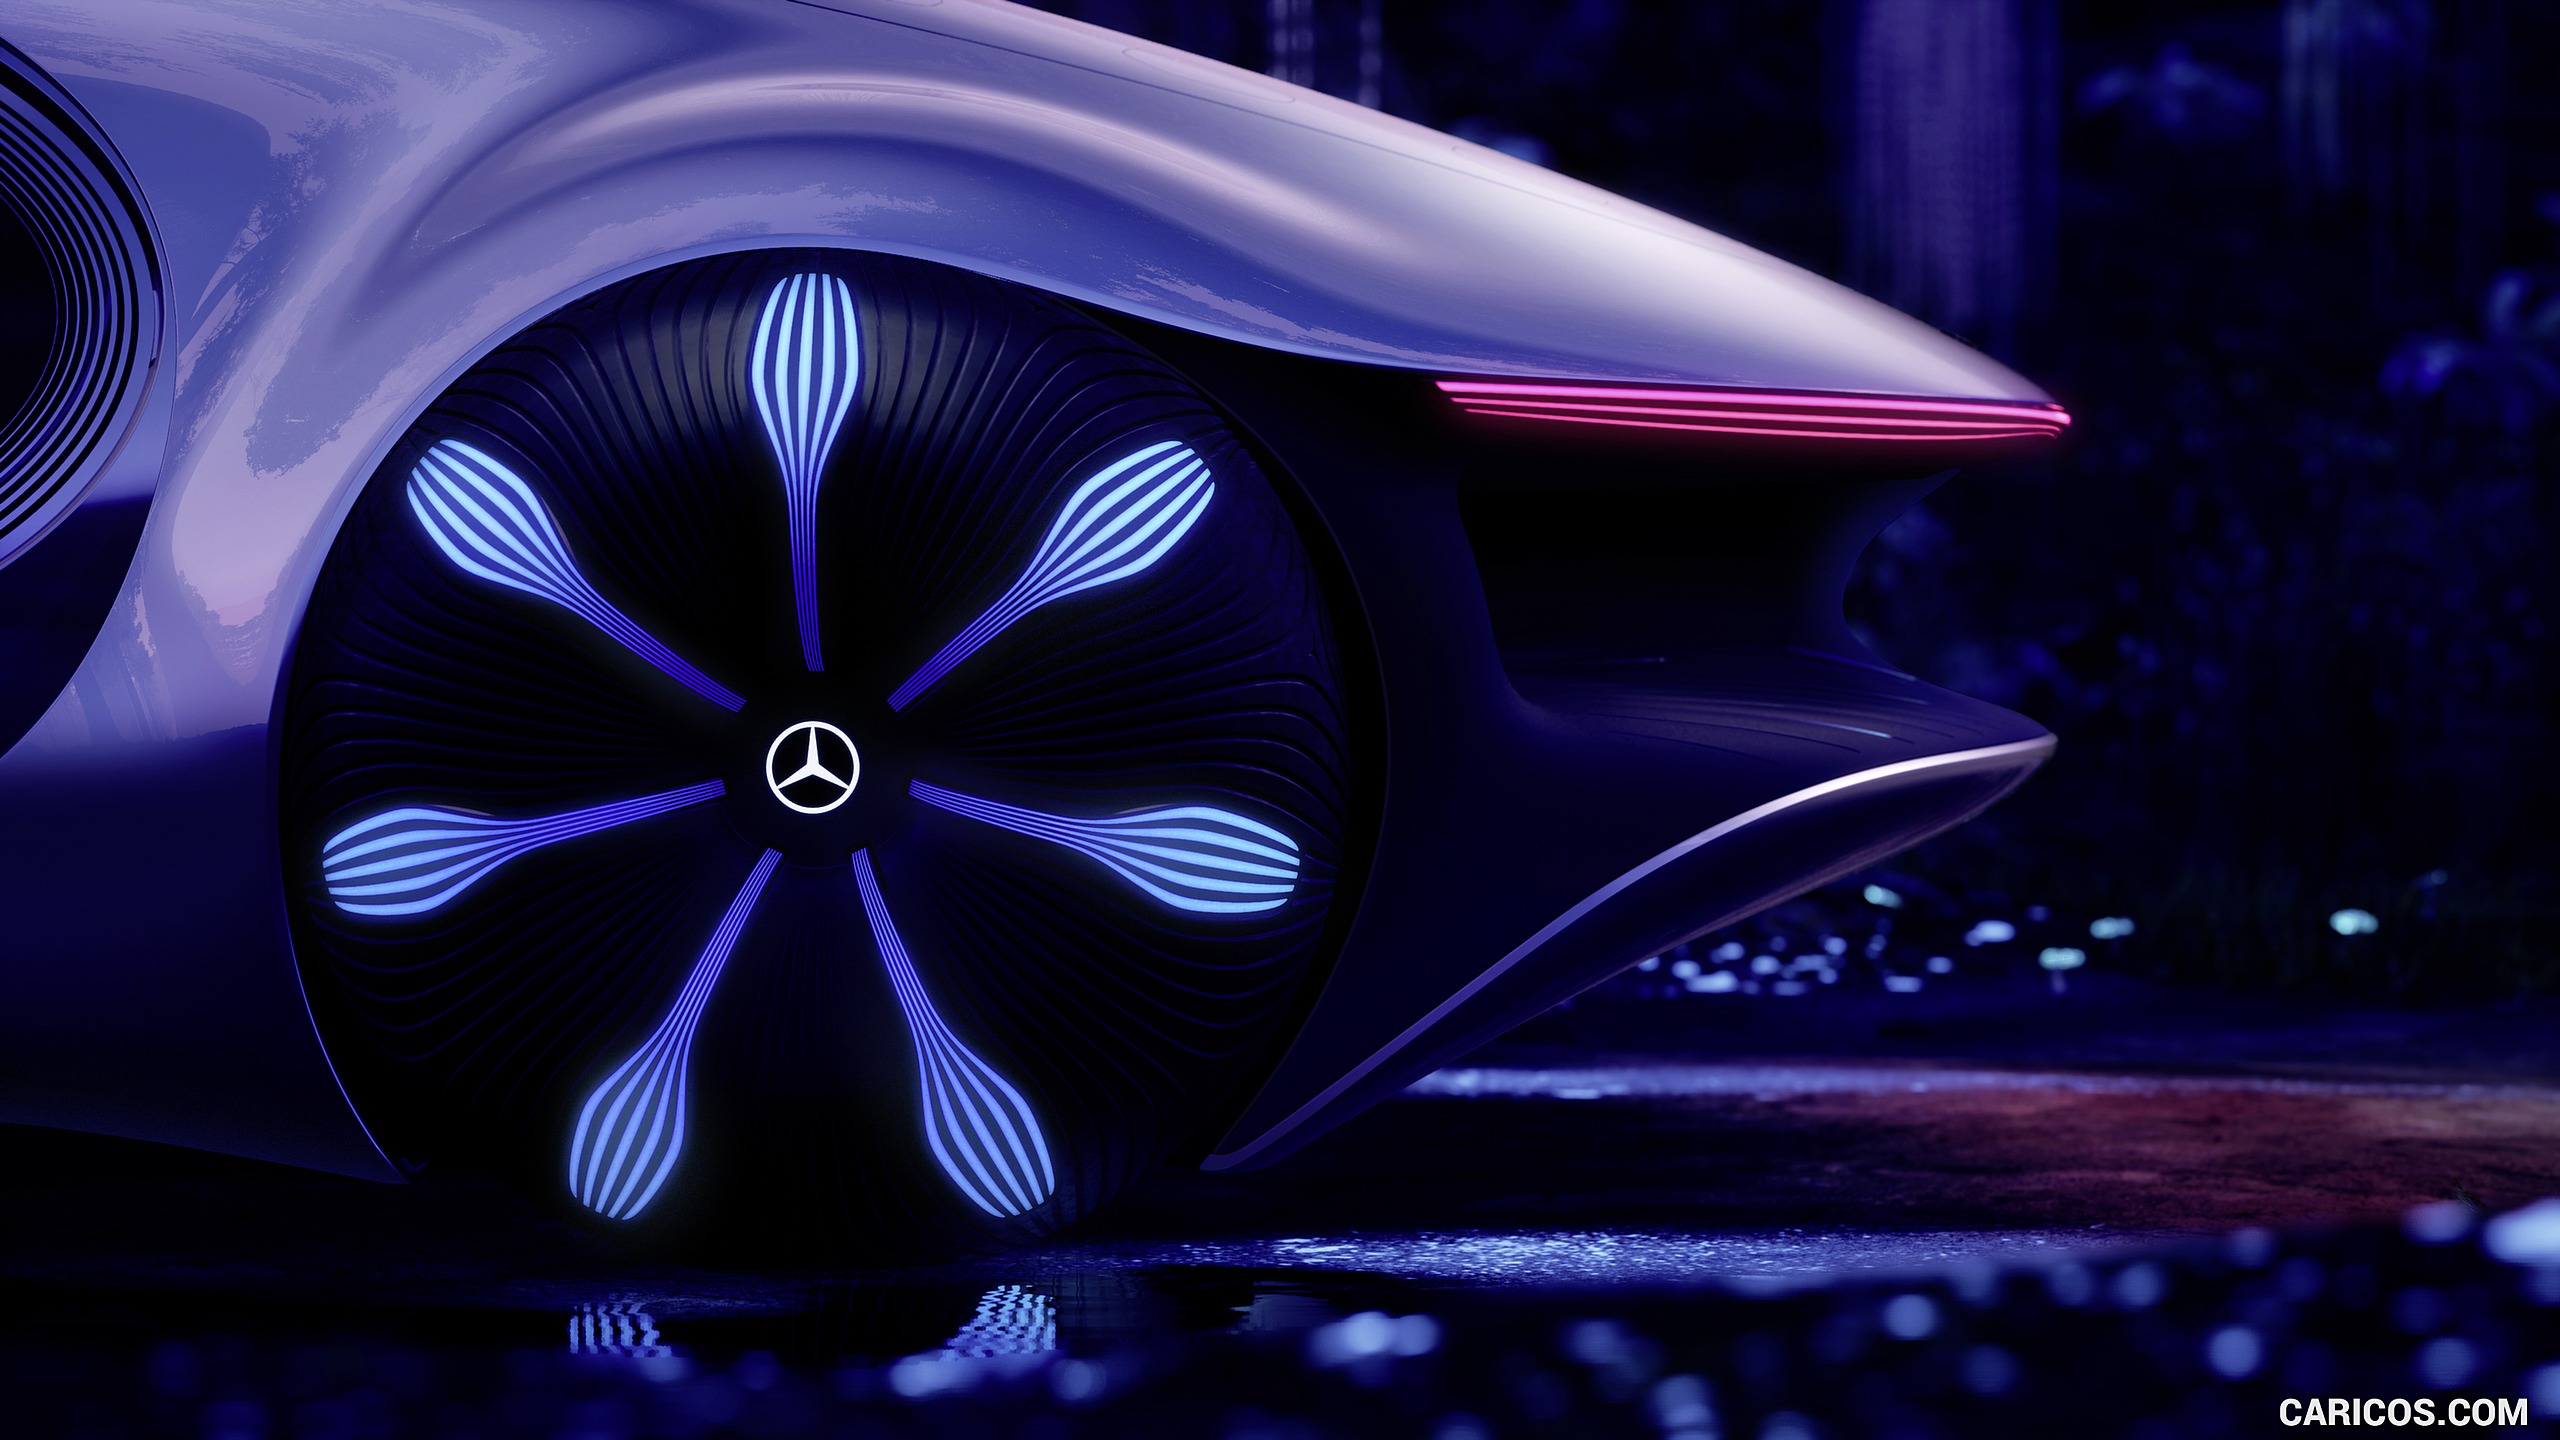 2020 Mercedes-Benz VISION AVTR Concept - Wheel, #26 of 60